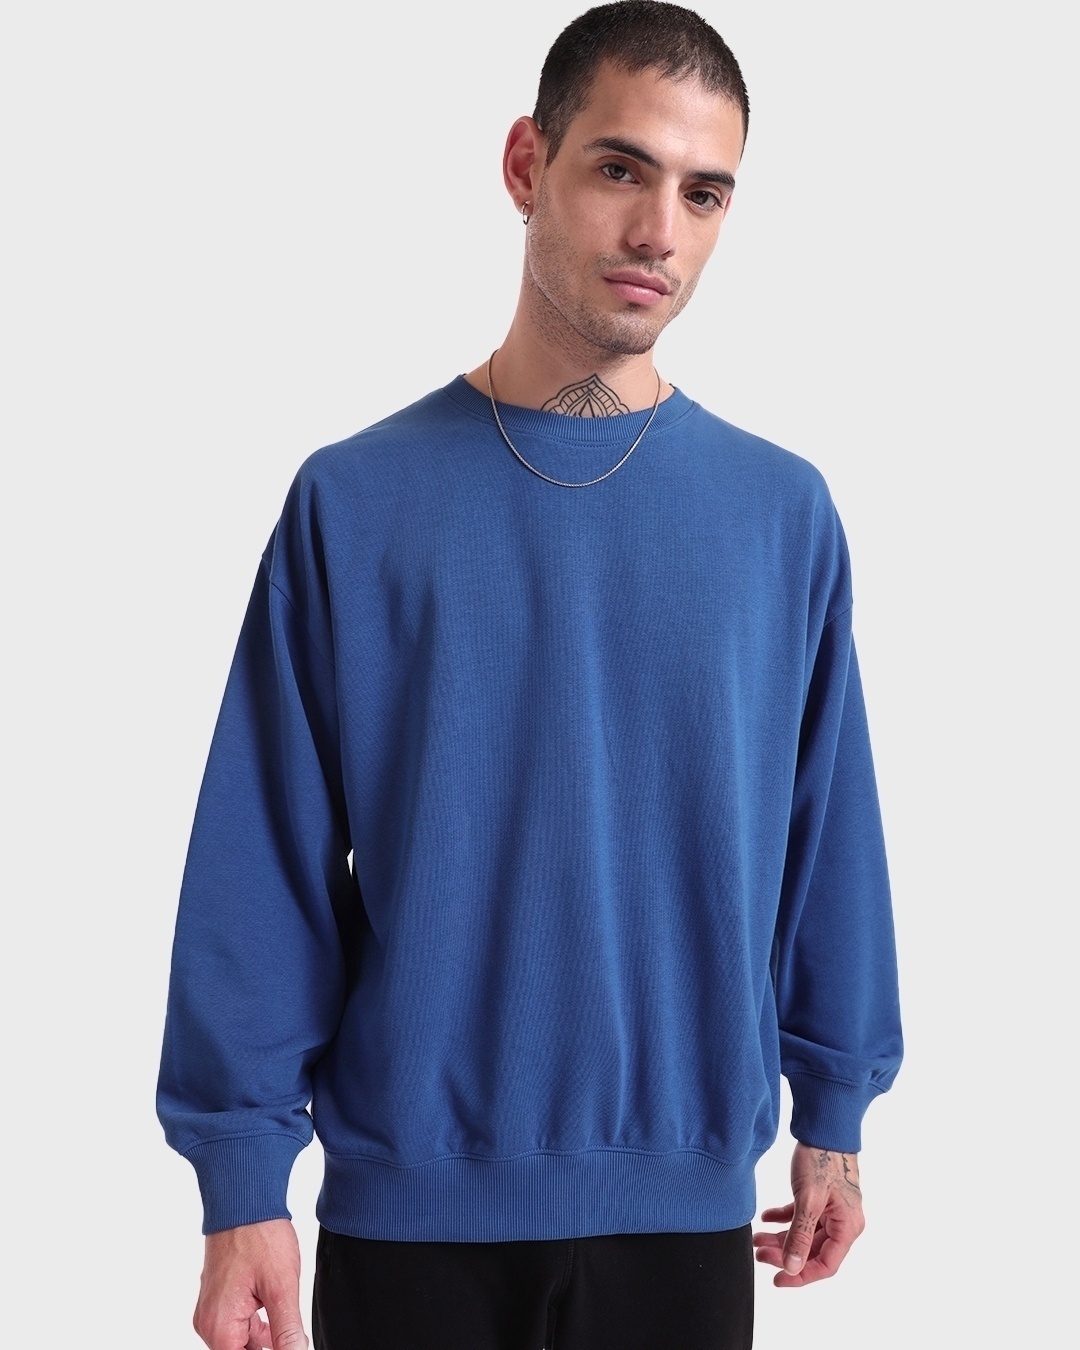 Buy Men's Blue Oversized Sweatshirt Online at Bewakoof